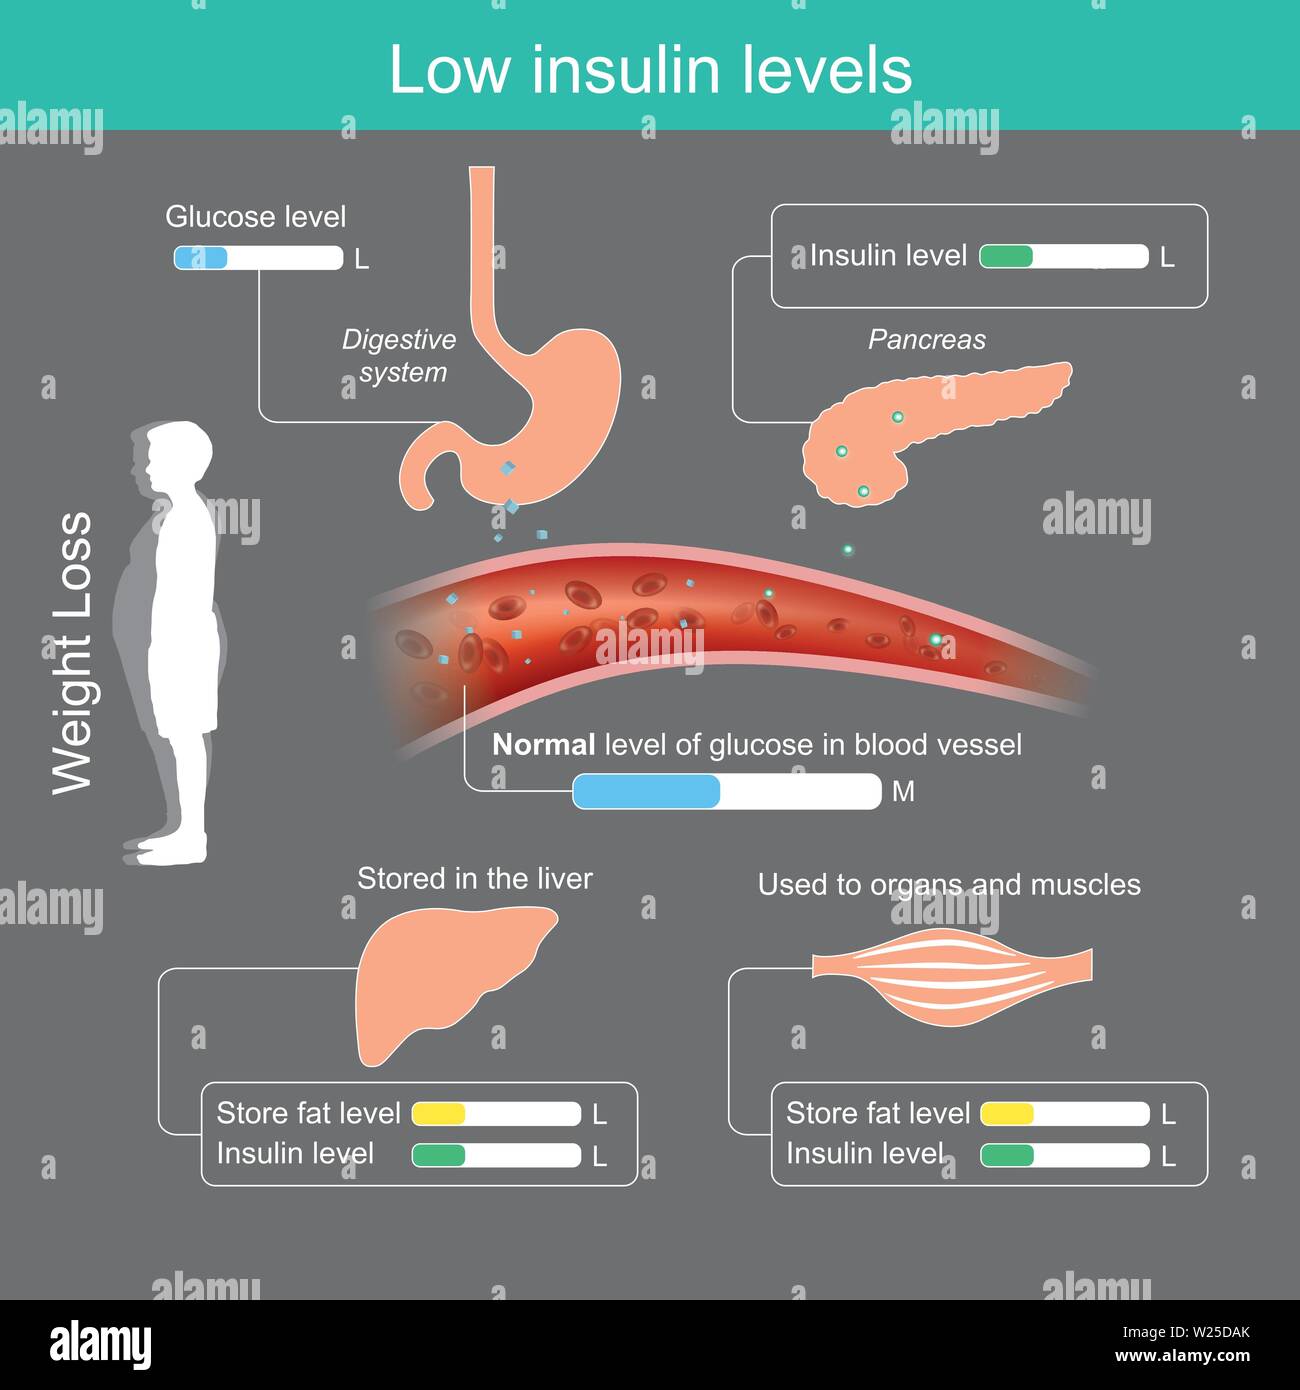 Niedrigen Insulinspiegel. Verringerung der Stärke und Zucker Zutat in Lebensmitteln wird in der Bauchspeicheldrüse sezernieren weniger Insulin, das Gehirn ist nicht die Förderung der Appe Stock Vektor